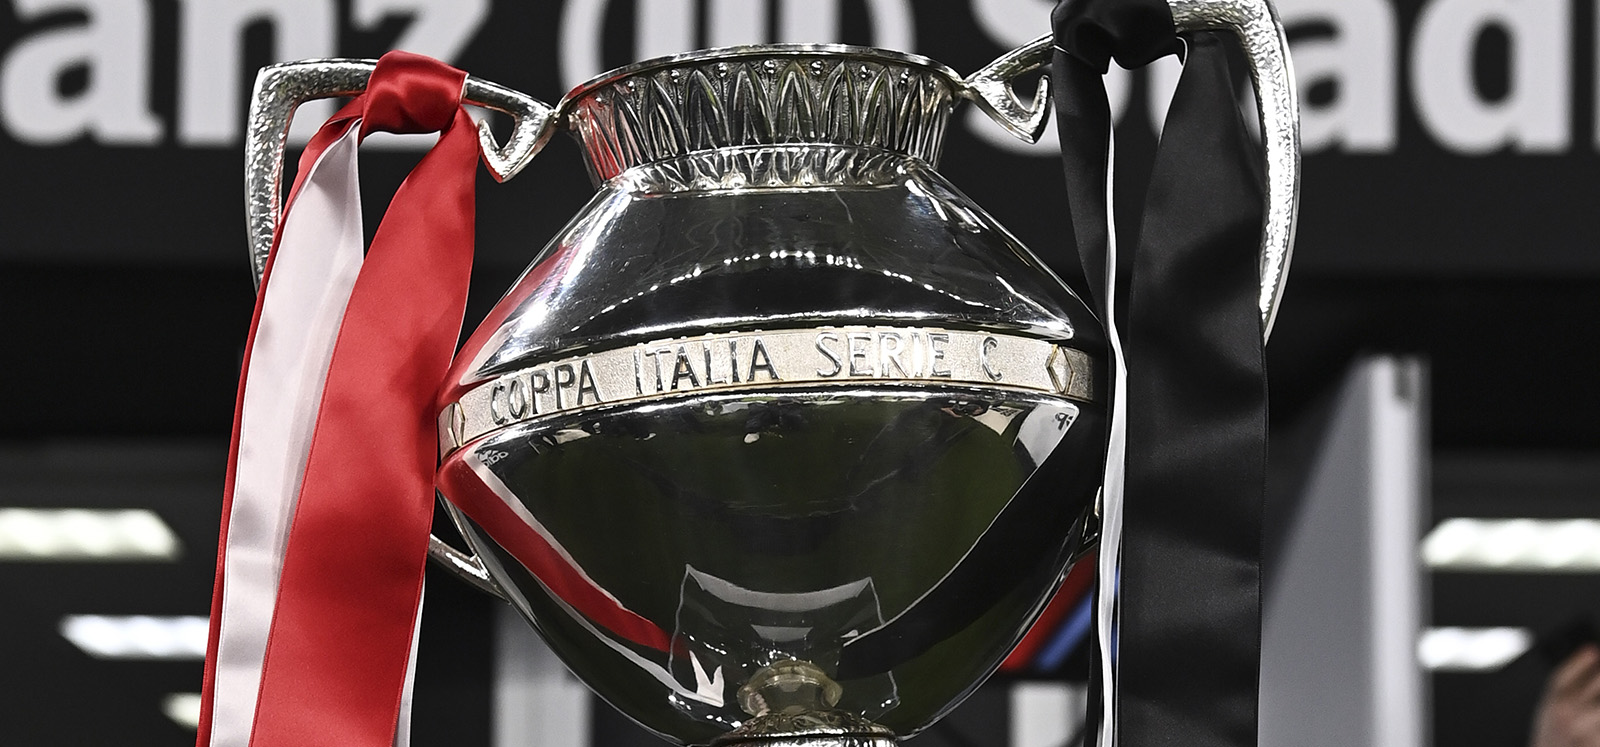 Coppa Italia C, debutto in casa per il Benevento contro il Taranto. Avellino in campo nel II turno. Ecco il programma